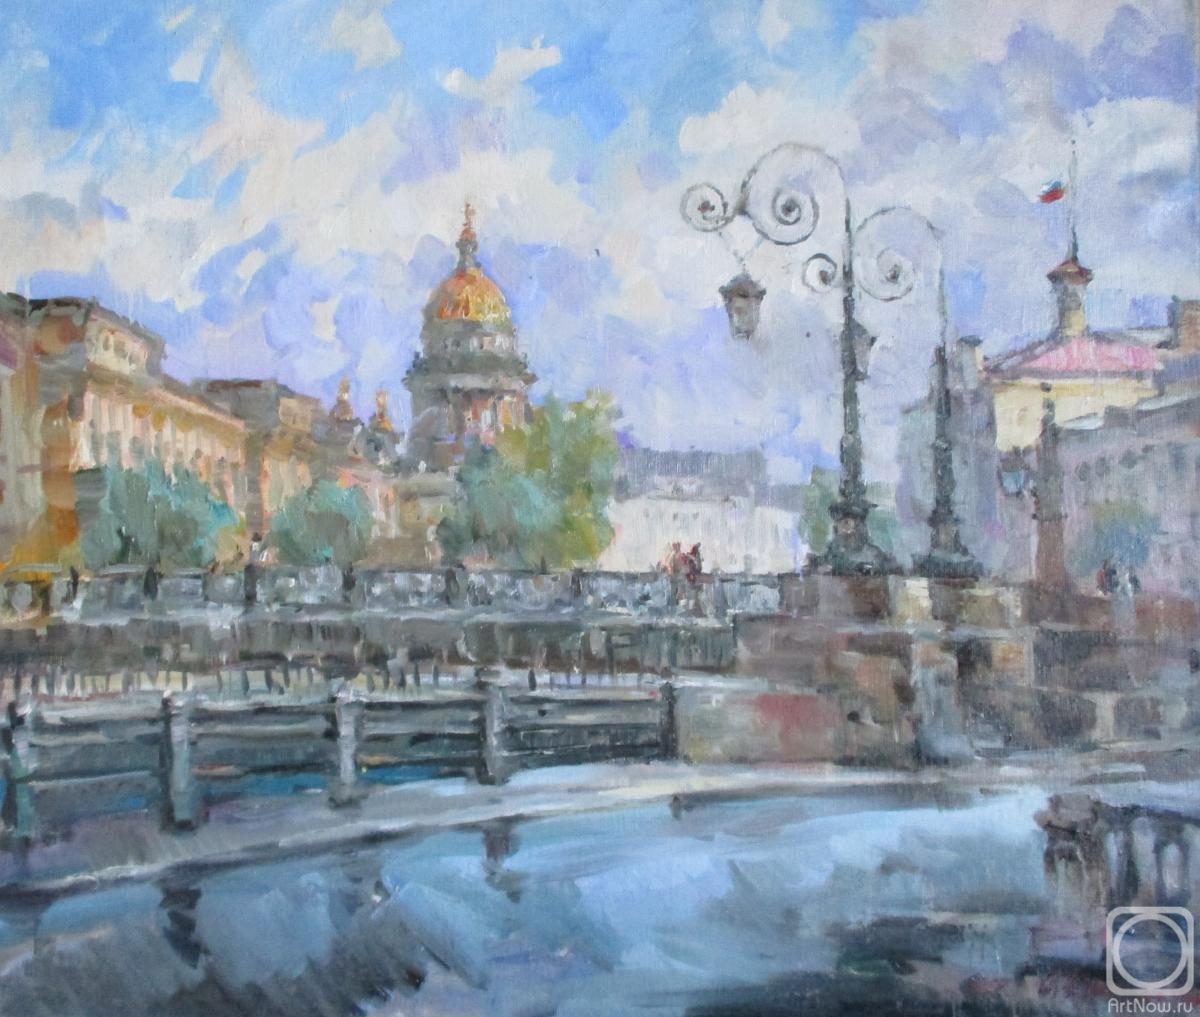 Rusanov Aleksandr. Bridges on the Sink